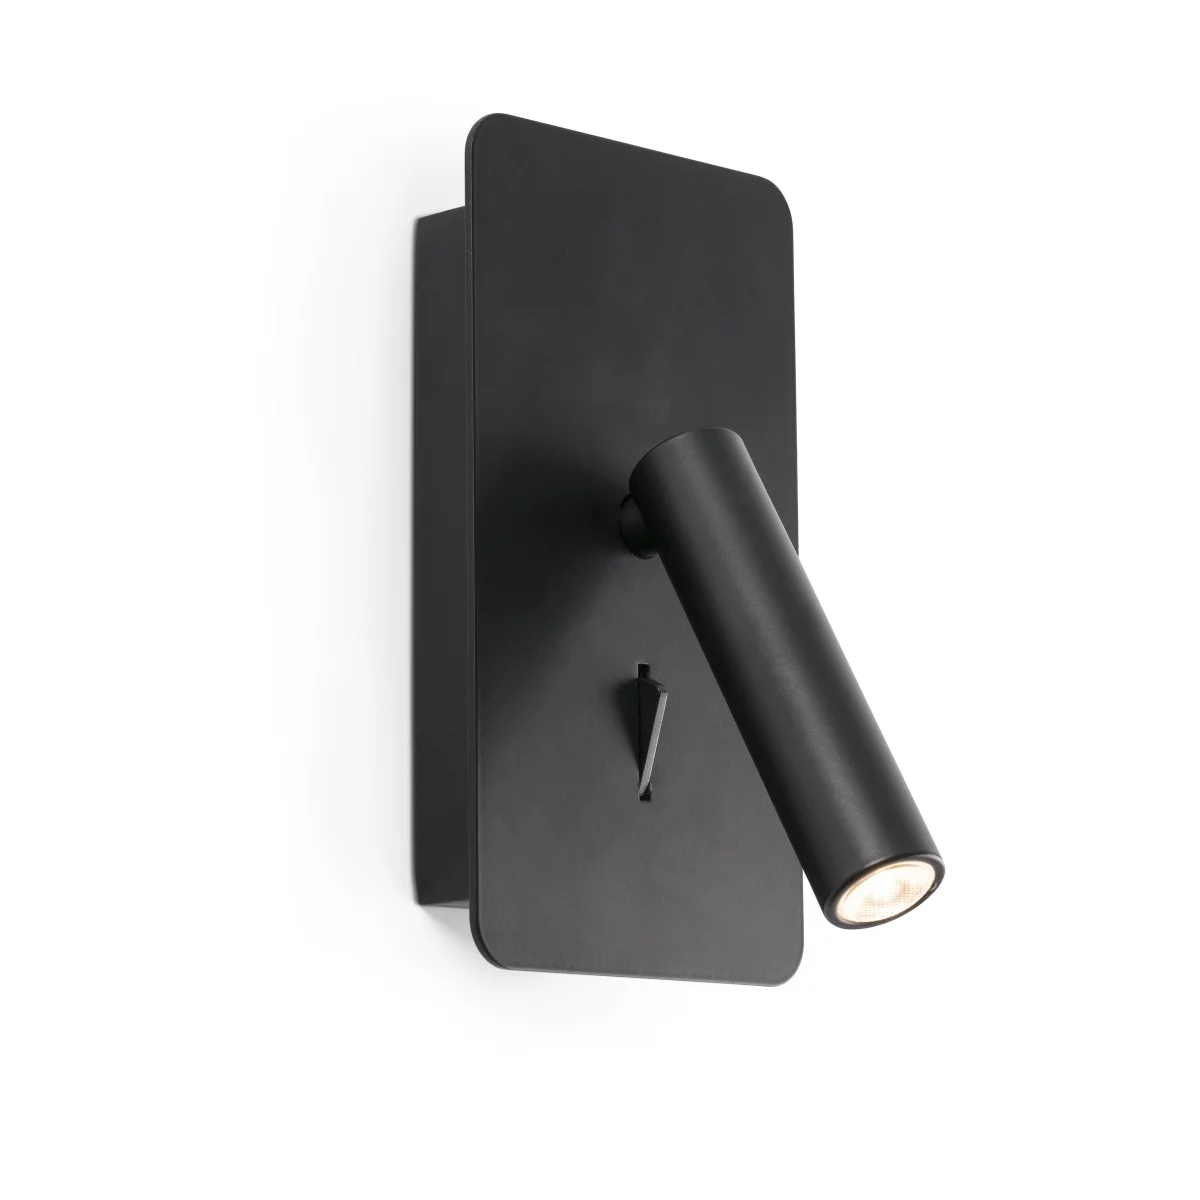 Wandleuchte Faro SUAU Wandaufbauleuchte mit USB-Anschluss schwenkbar schwarz